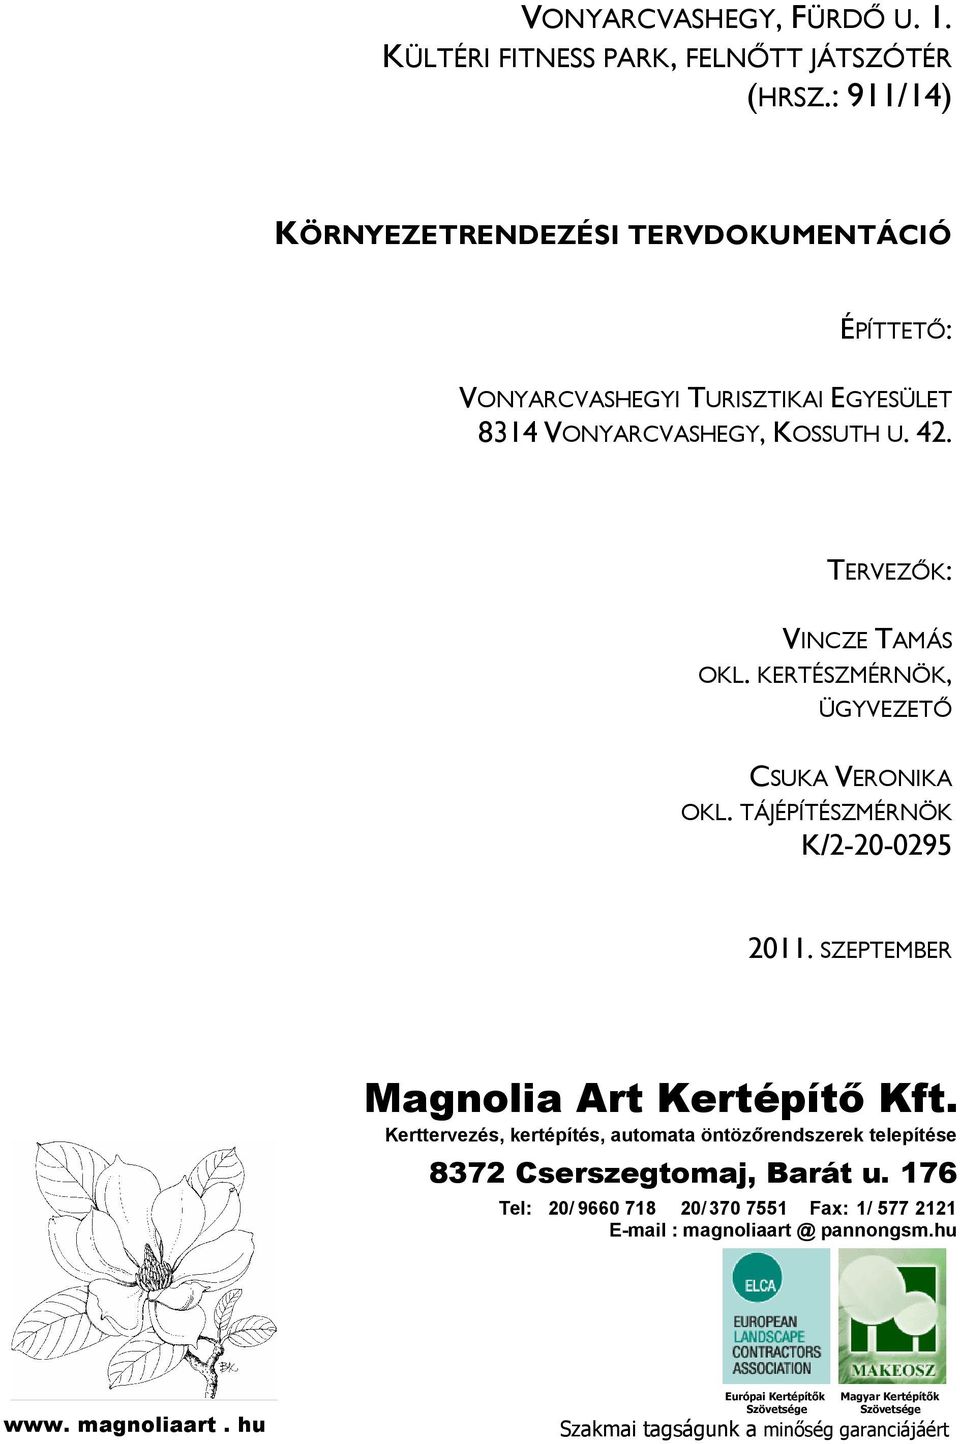 KERTÉSZMÉRNÖK, ÜGYVEZETİ CSUKA VERONIKA OKL. TÁJÉPÍTÉSZMÉRNÖK K/2-20-0295 2011. SZEPTEMBER Magnolia Art Kertépítı Kft.